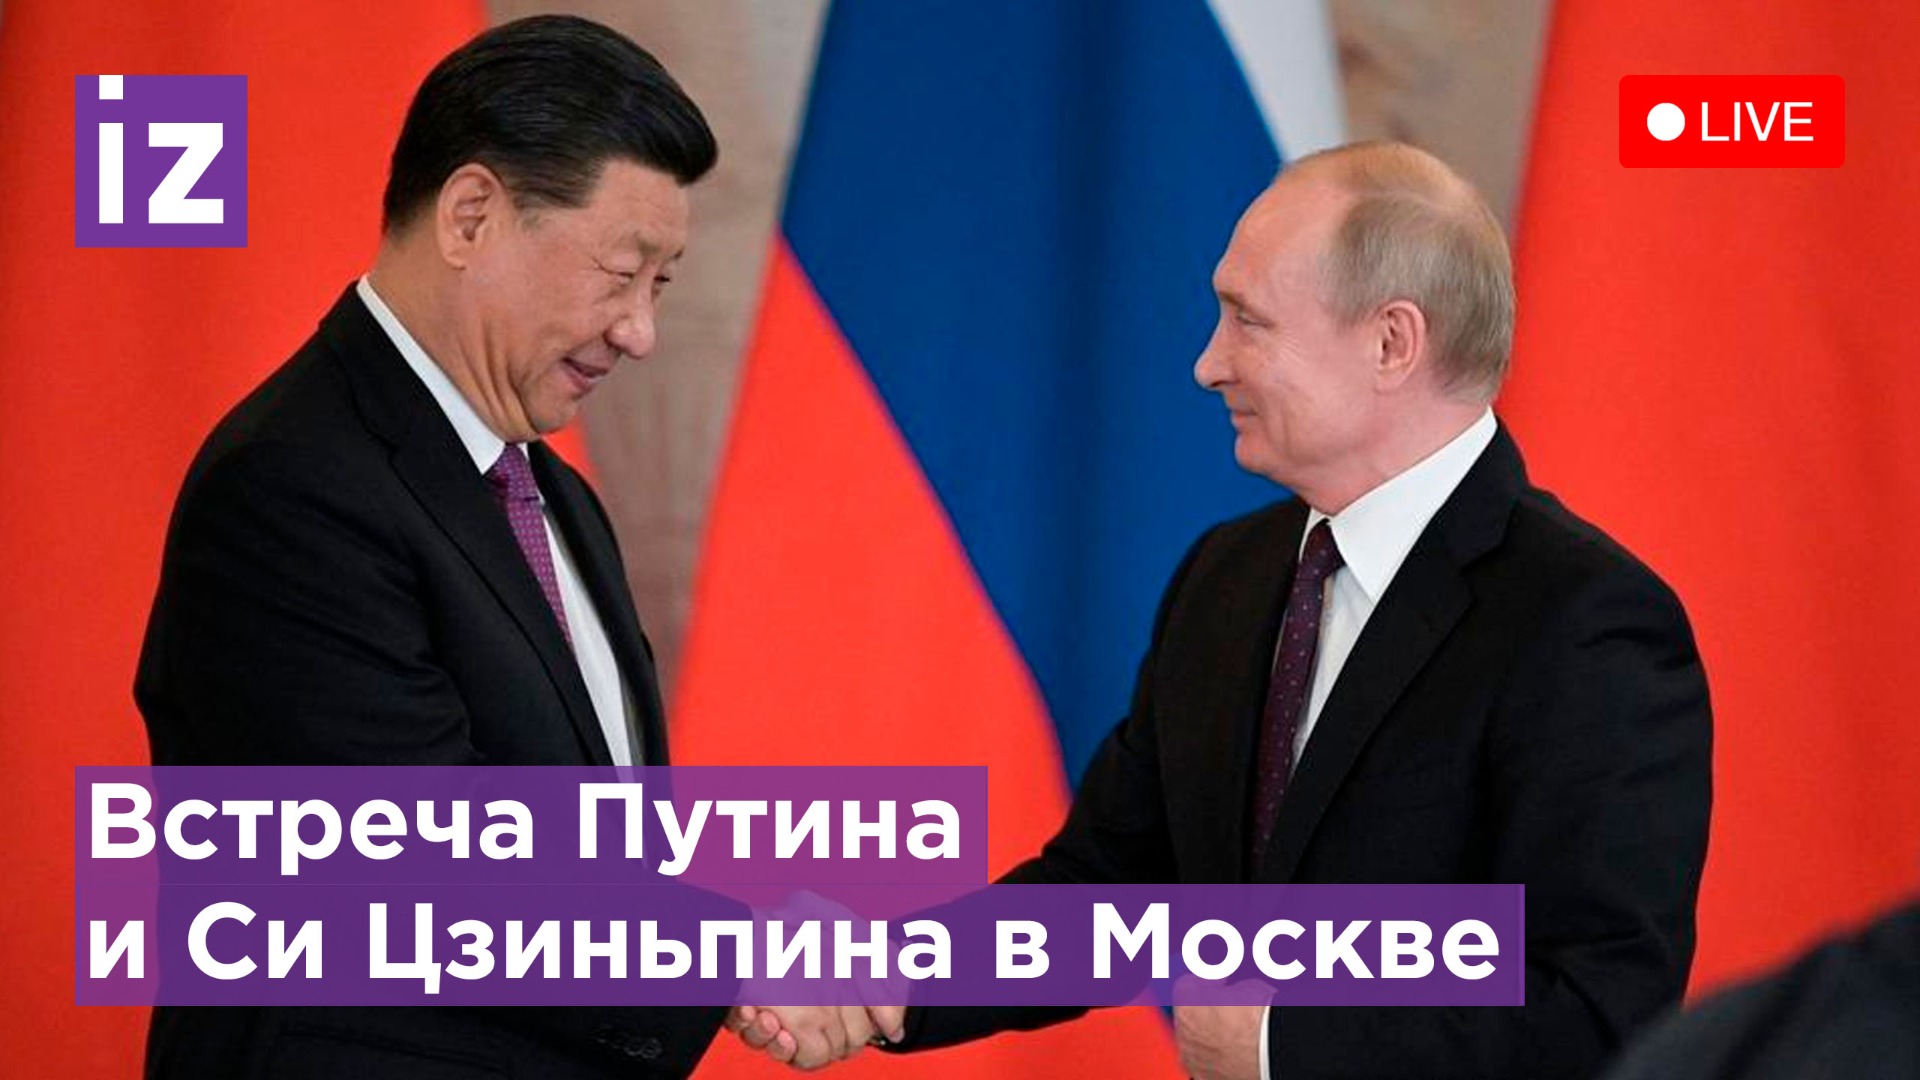  Владимир Путин и Си Цзиньпин: Двусторонние переговоры в Москве - Прямая трансляция 